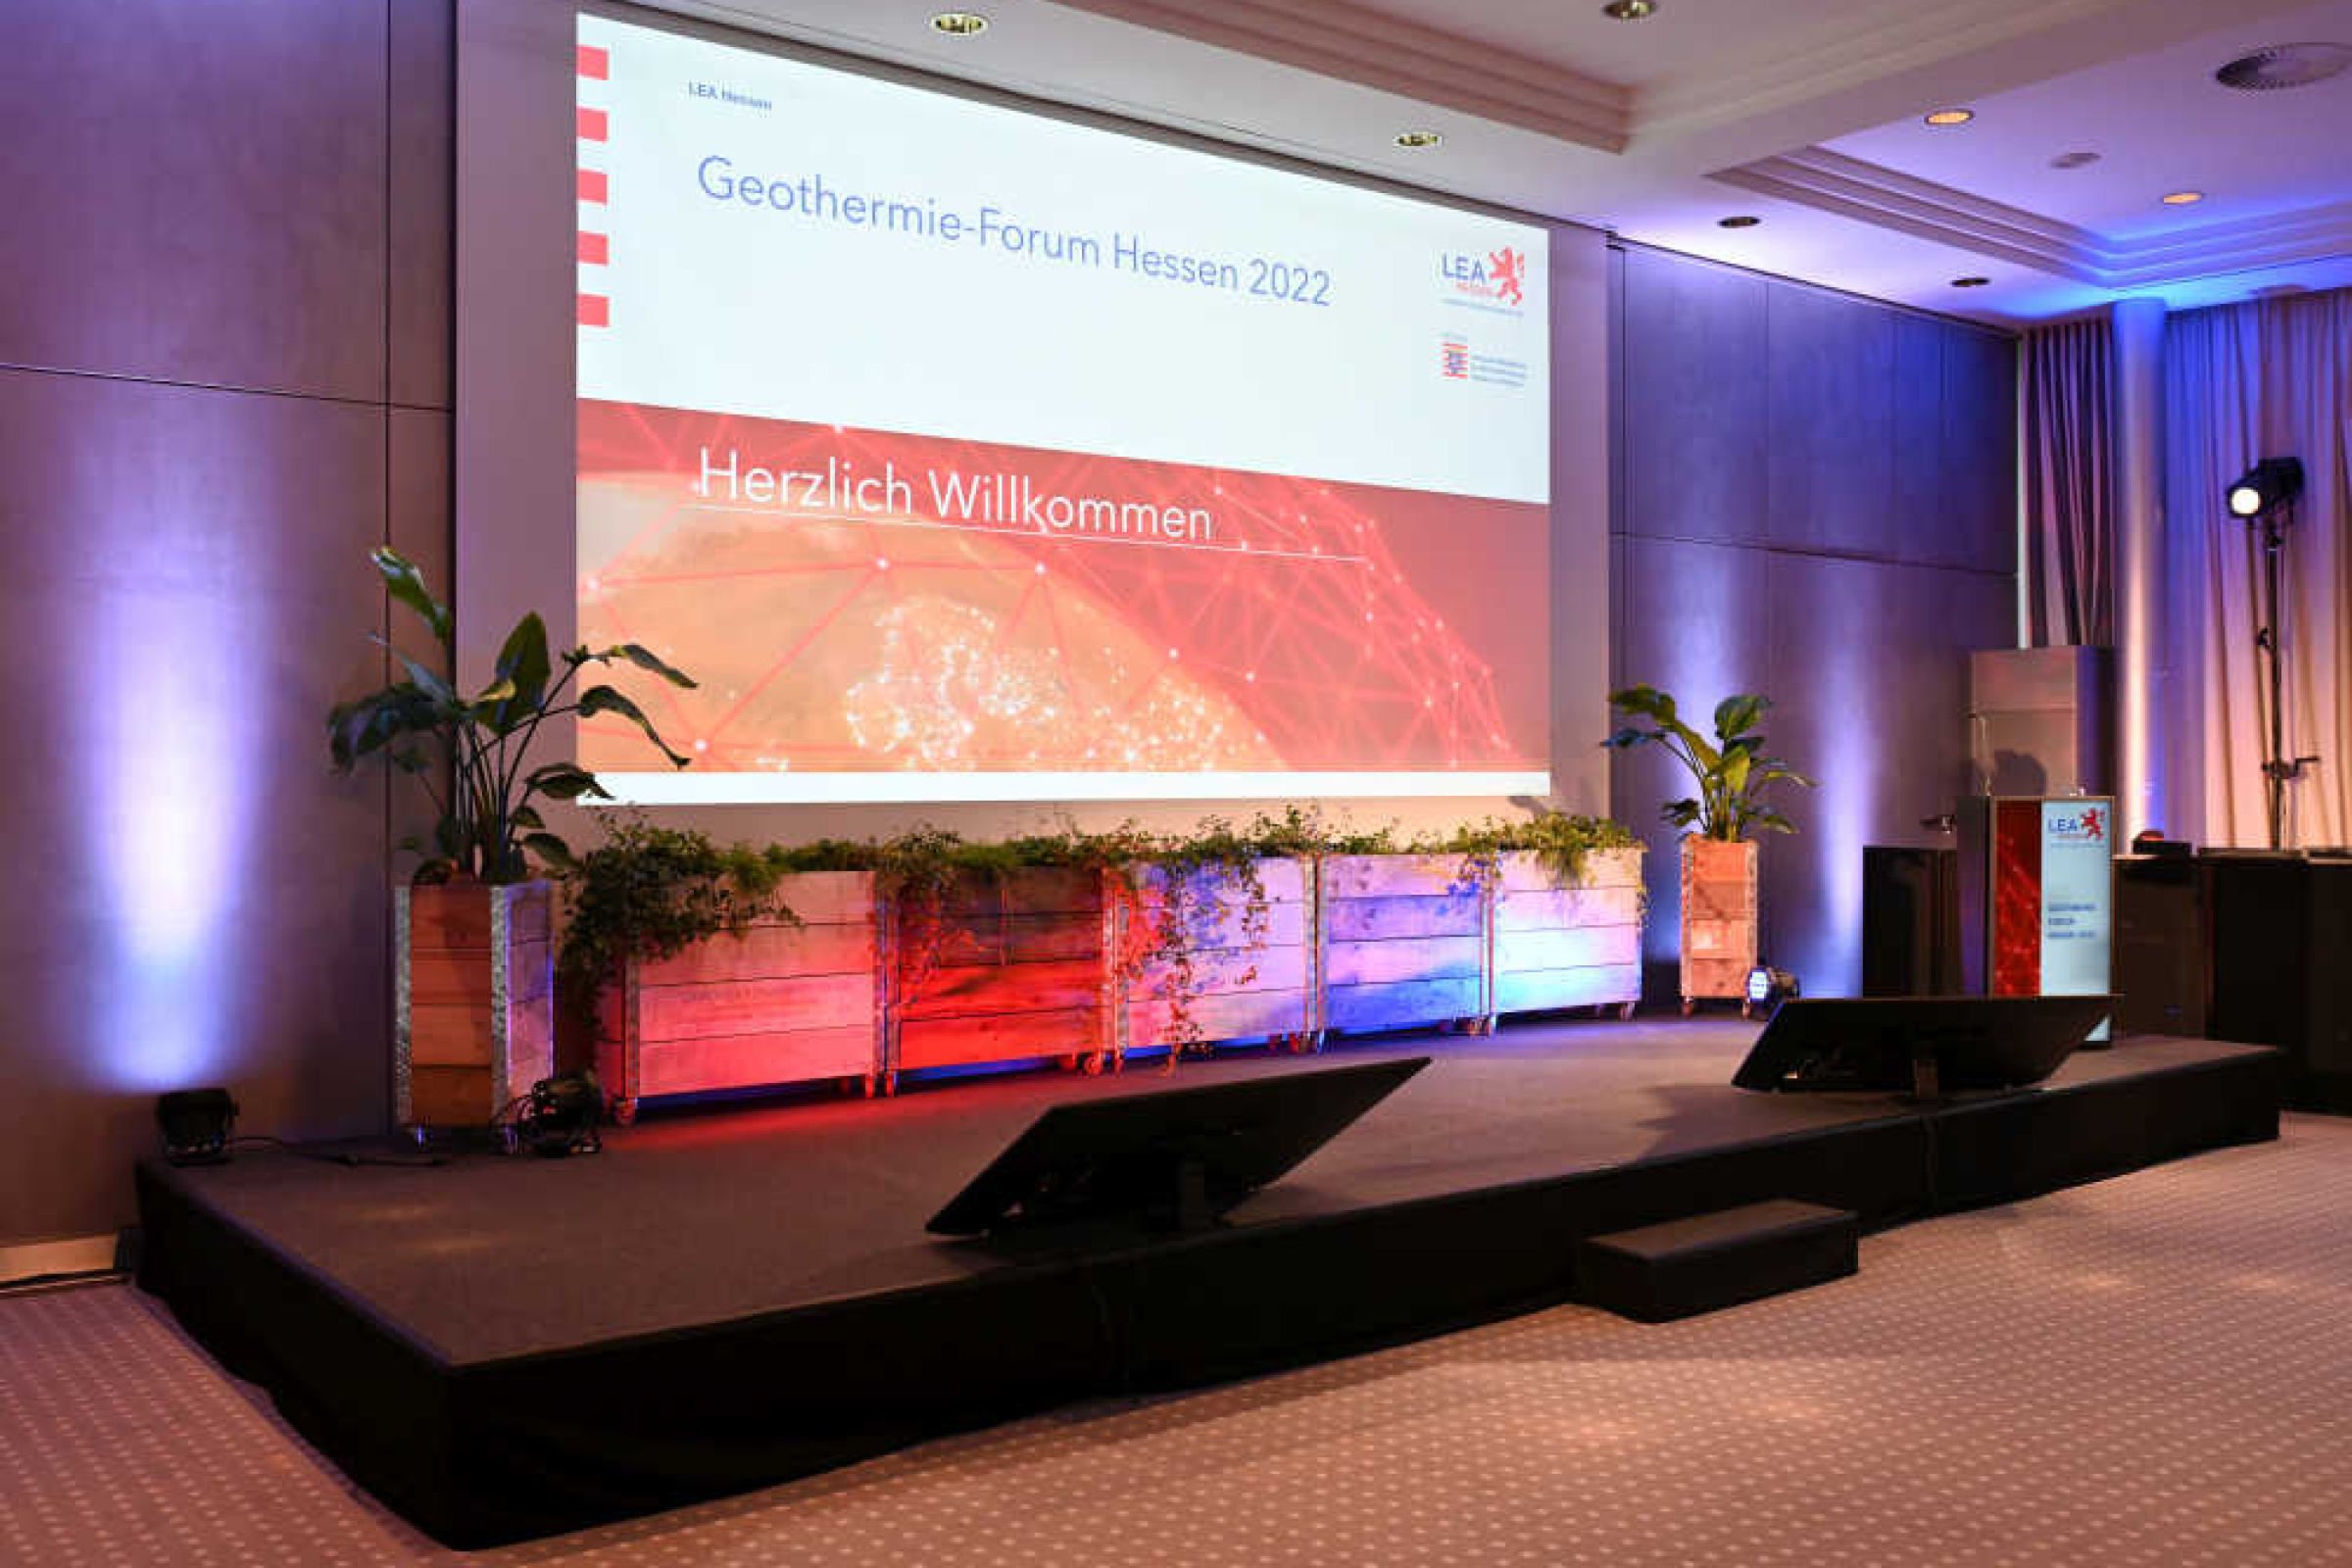 Großbildschirm auf einer Bühn zeigt einen Willkommensgruß, Text: Geothermie Forum Hessen 2022 – Herzlich Willkommen!